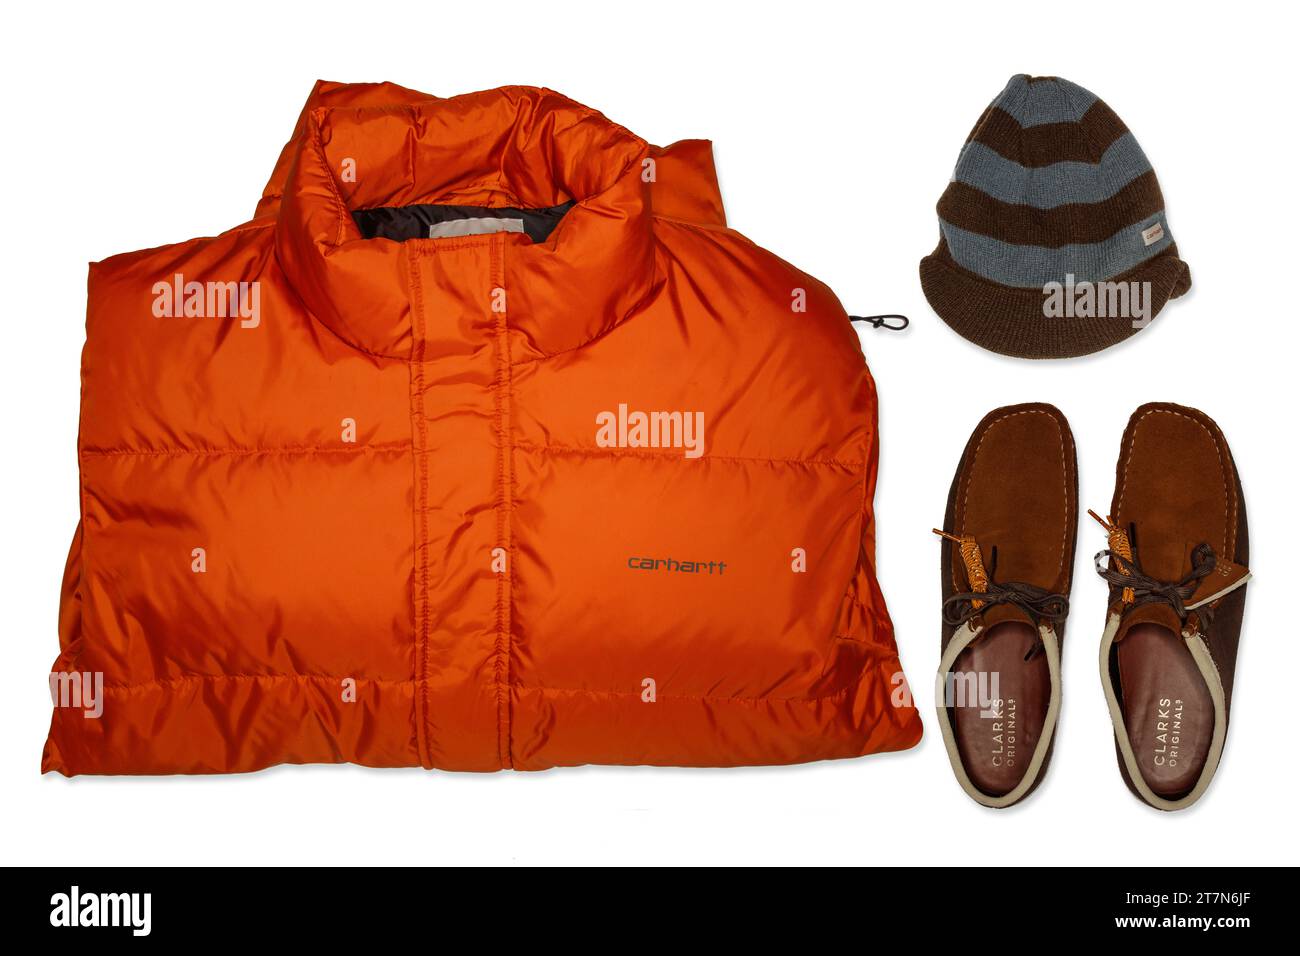 Une superbe vue de dessus haute résolution d'une veste en duvet orange Carhartt tendance streetwear et d'un bonnet en laine rayée et de Clarks Originals Walabees Banque D'Images